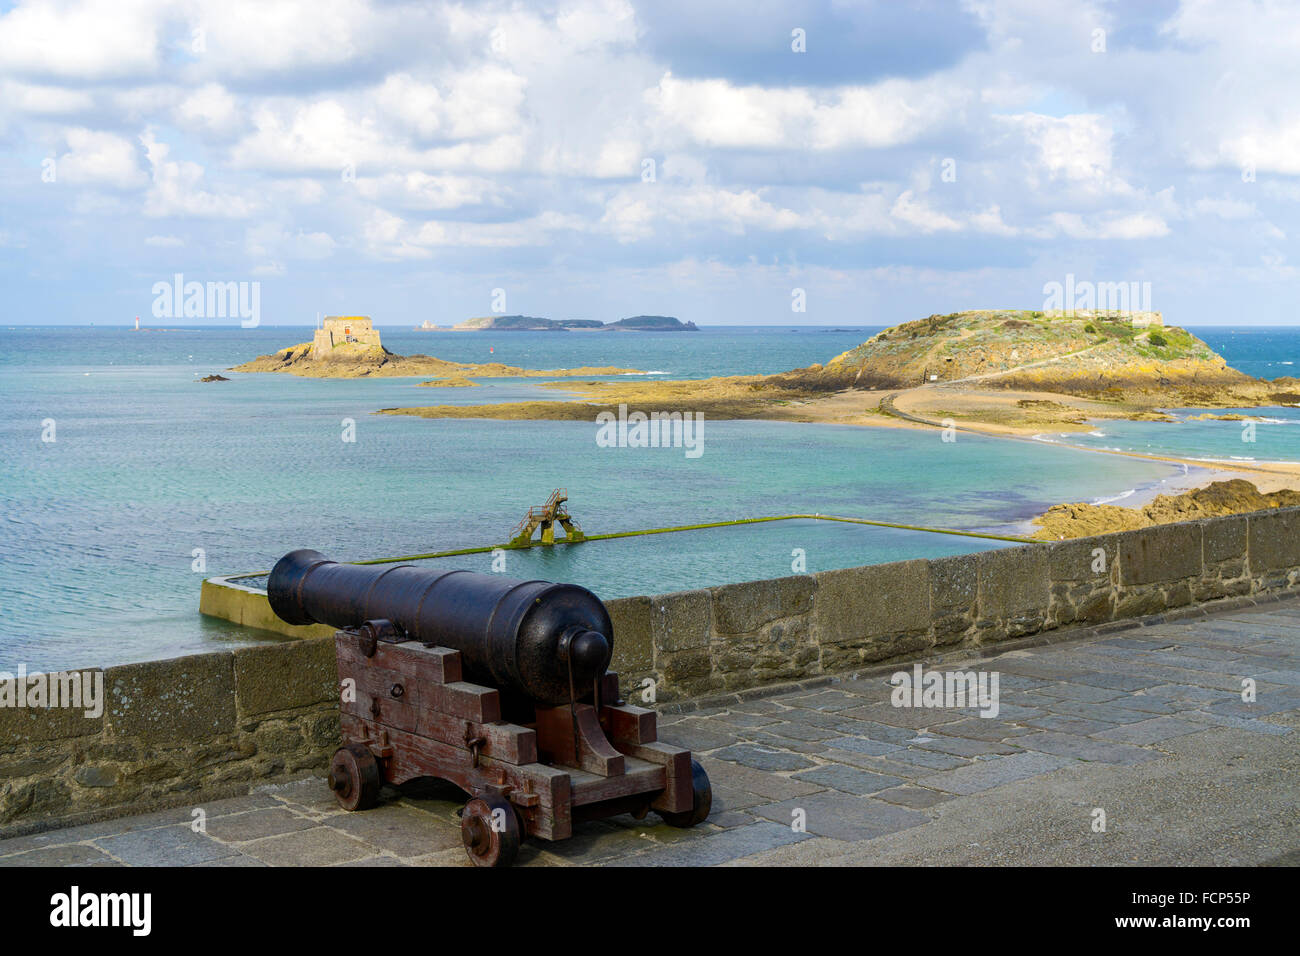 Cannone medievale sulle mura della città a St Malo, Bretagna Francia Foto Stock